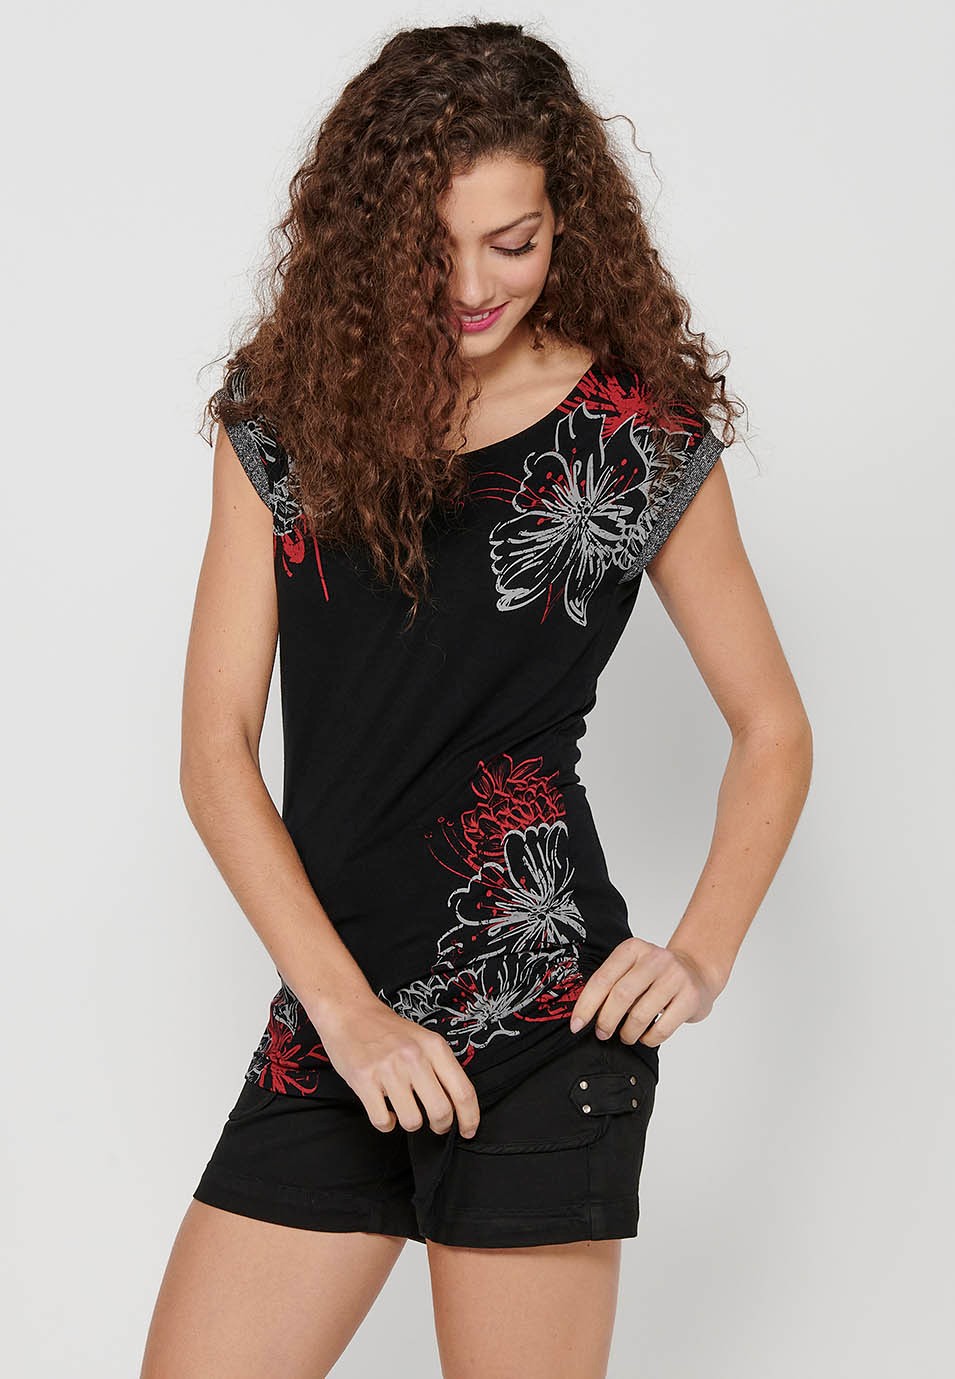 T-shirt long avec un côté froissé avec ruban à manches courtes avec détail et imprimé sur le devant en Noir pour Femme